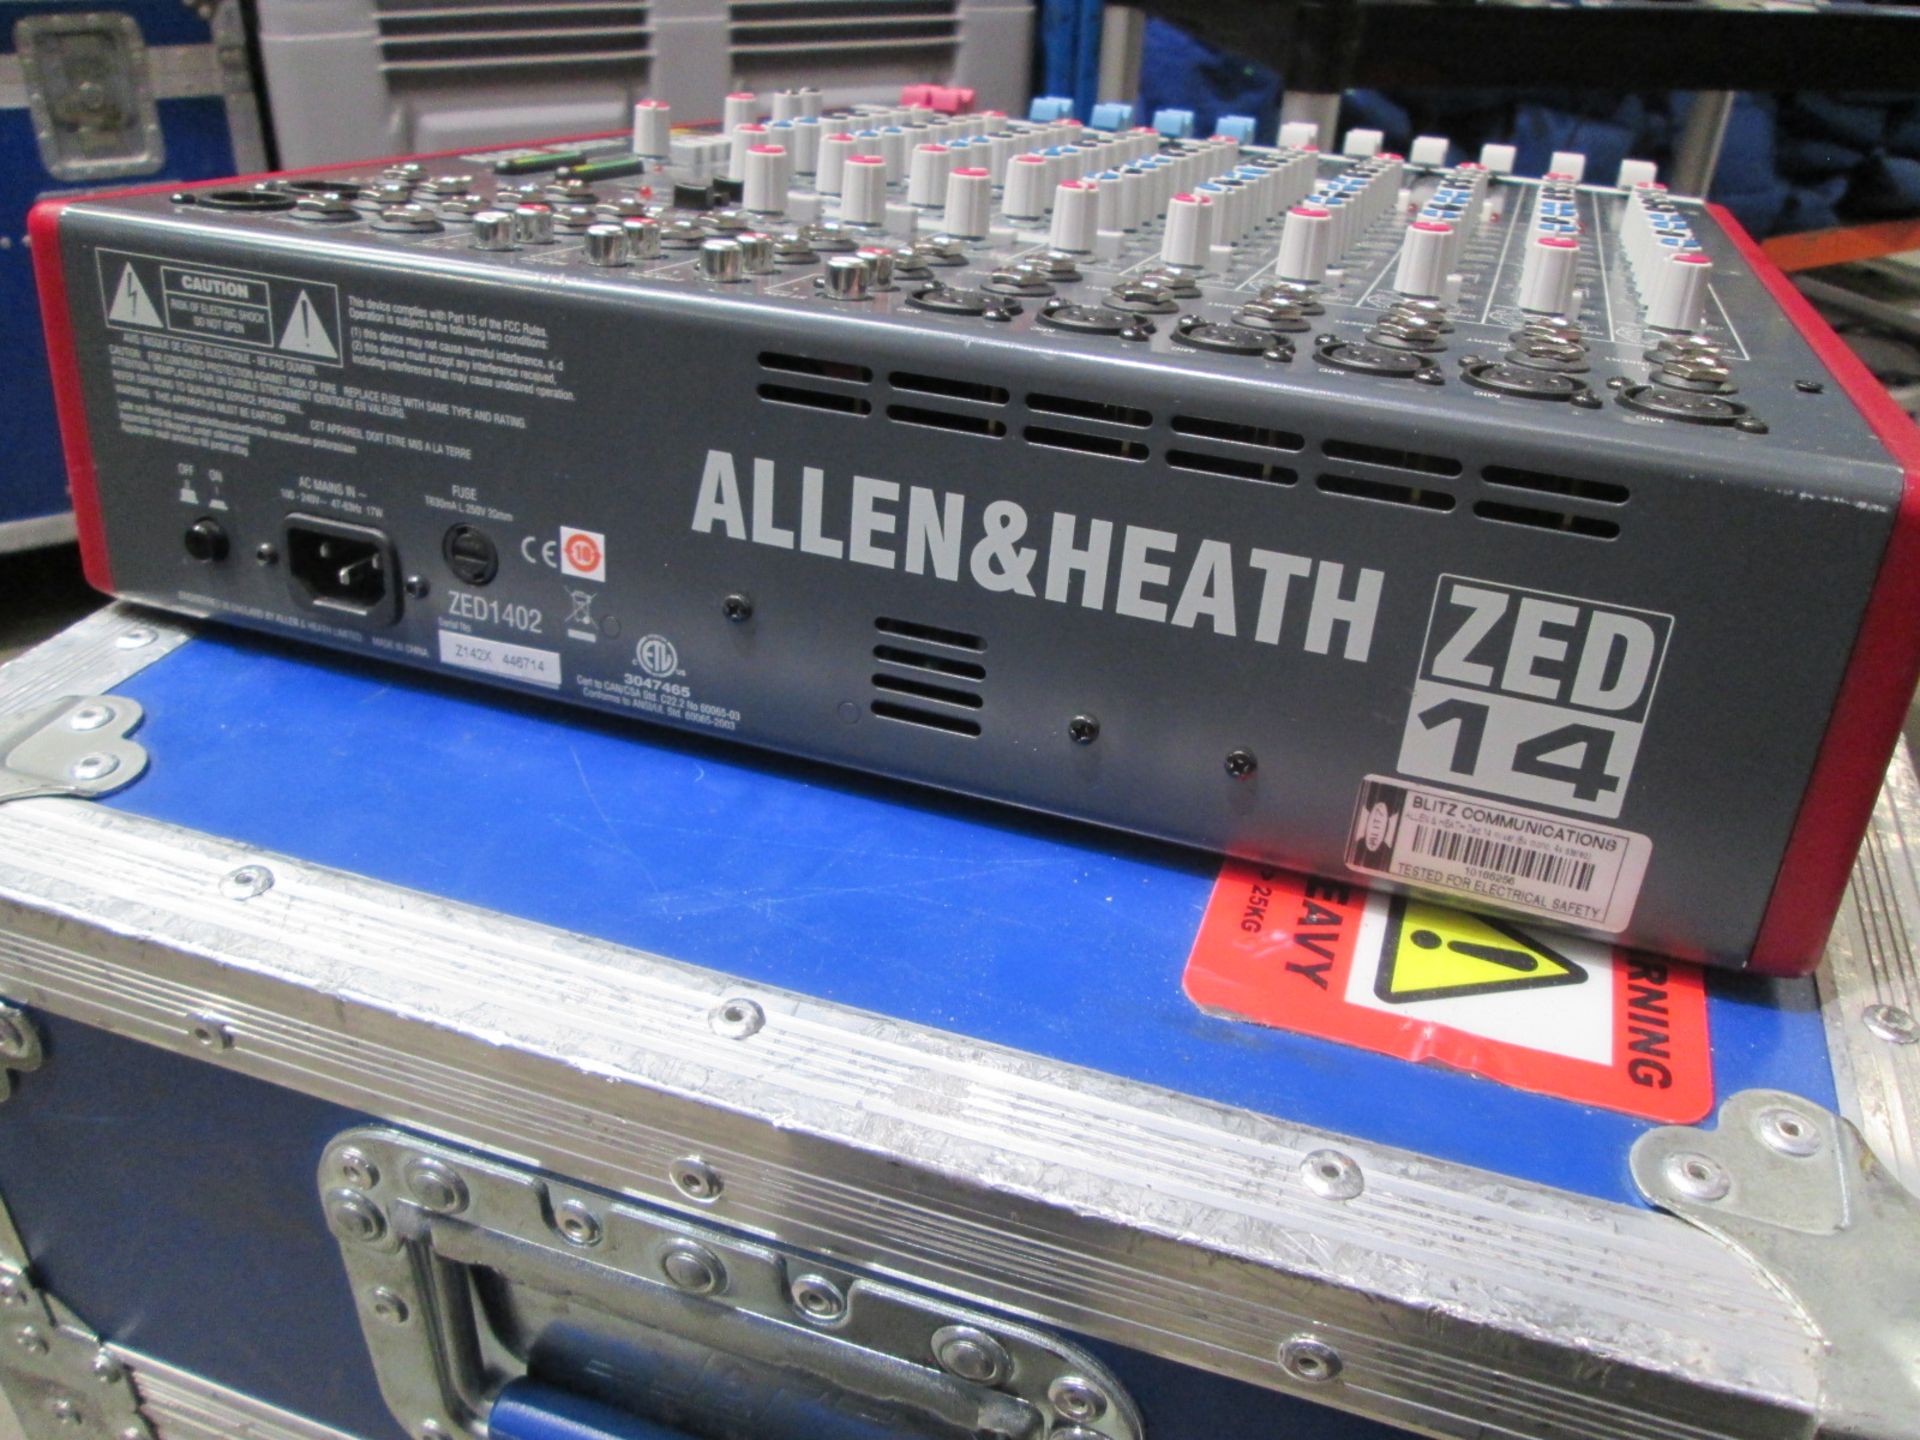 Allen & Heath Zed 14 Mixing Desk (6 x mono / 4 x stereo) S/N Z142X 446714. In flight case with - Image 4 of 6